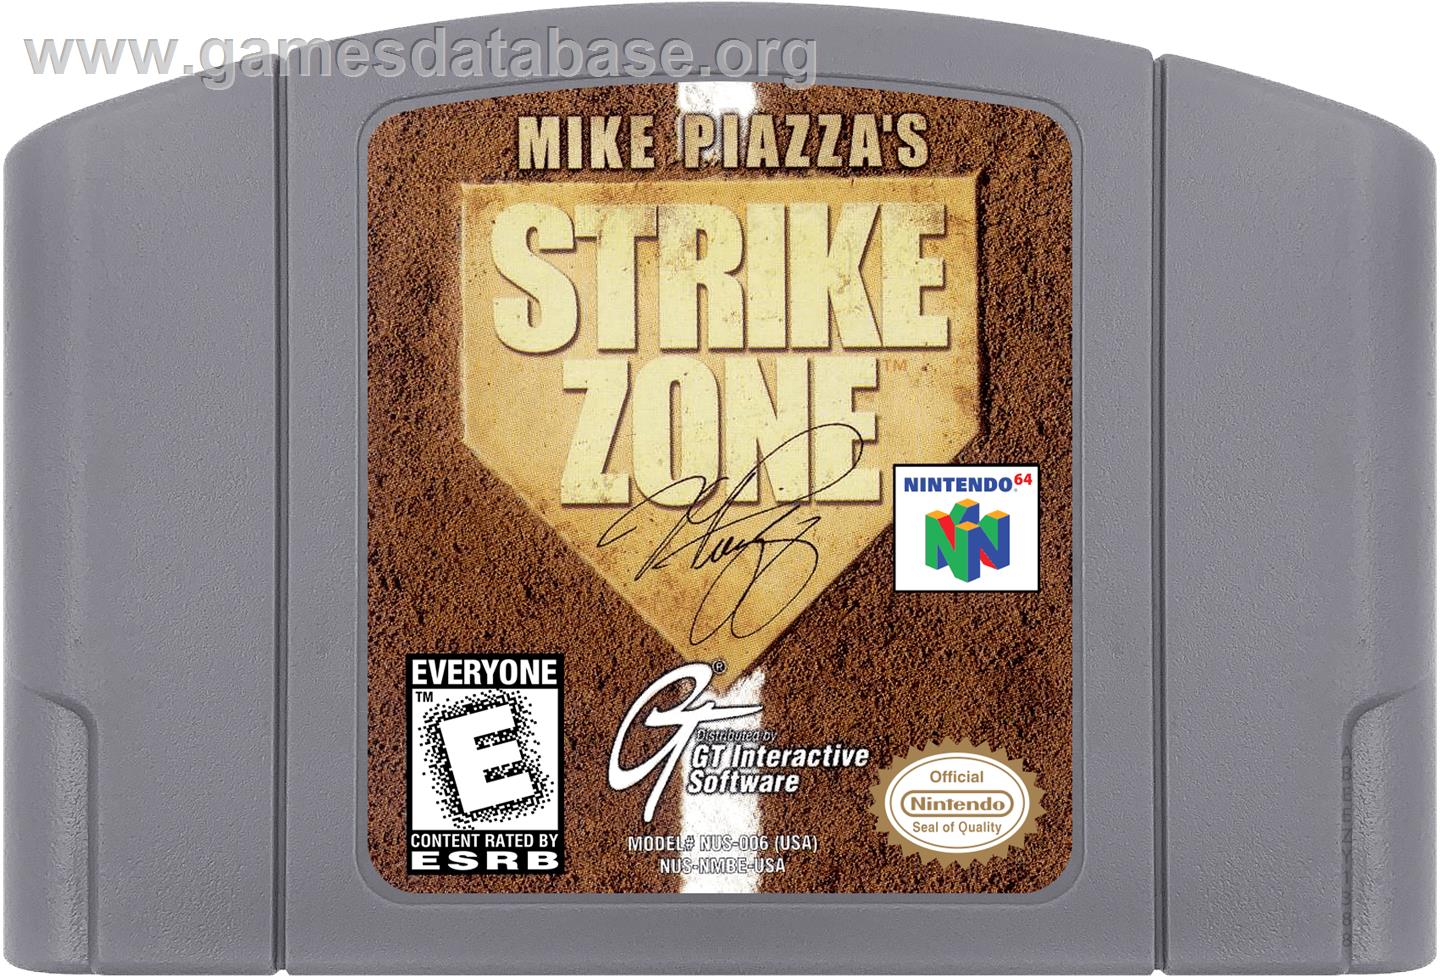 Mike Piazza's StrikeZone - Nintendo N64 - Artwork - Cartridge